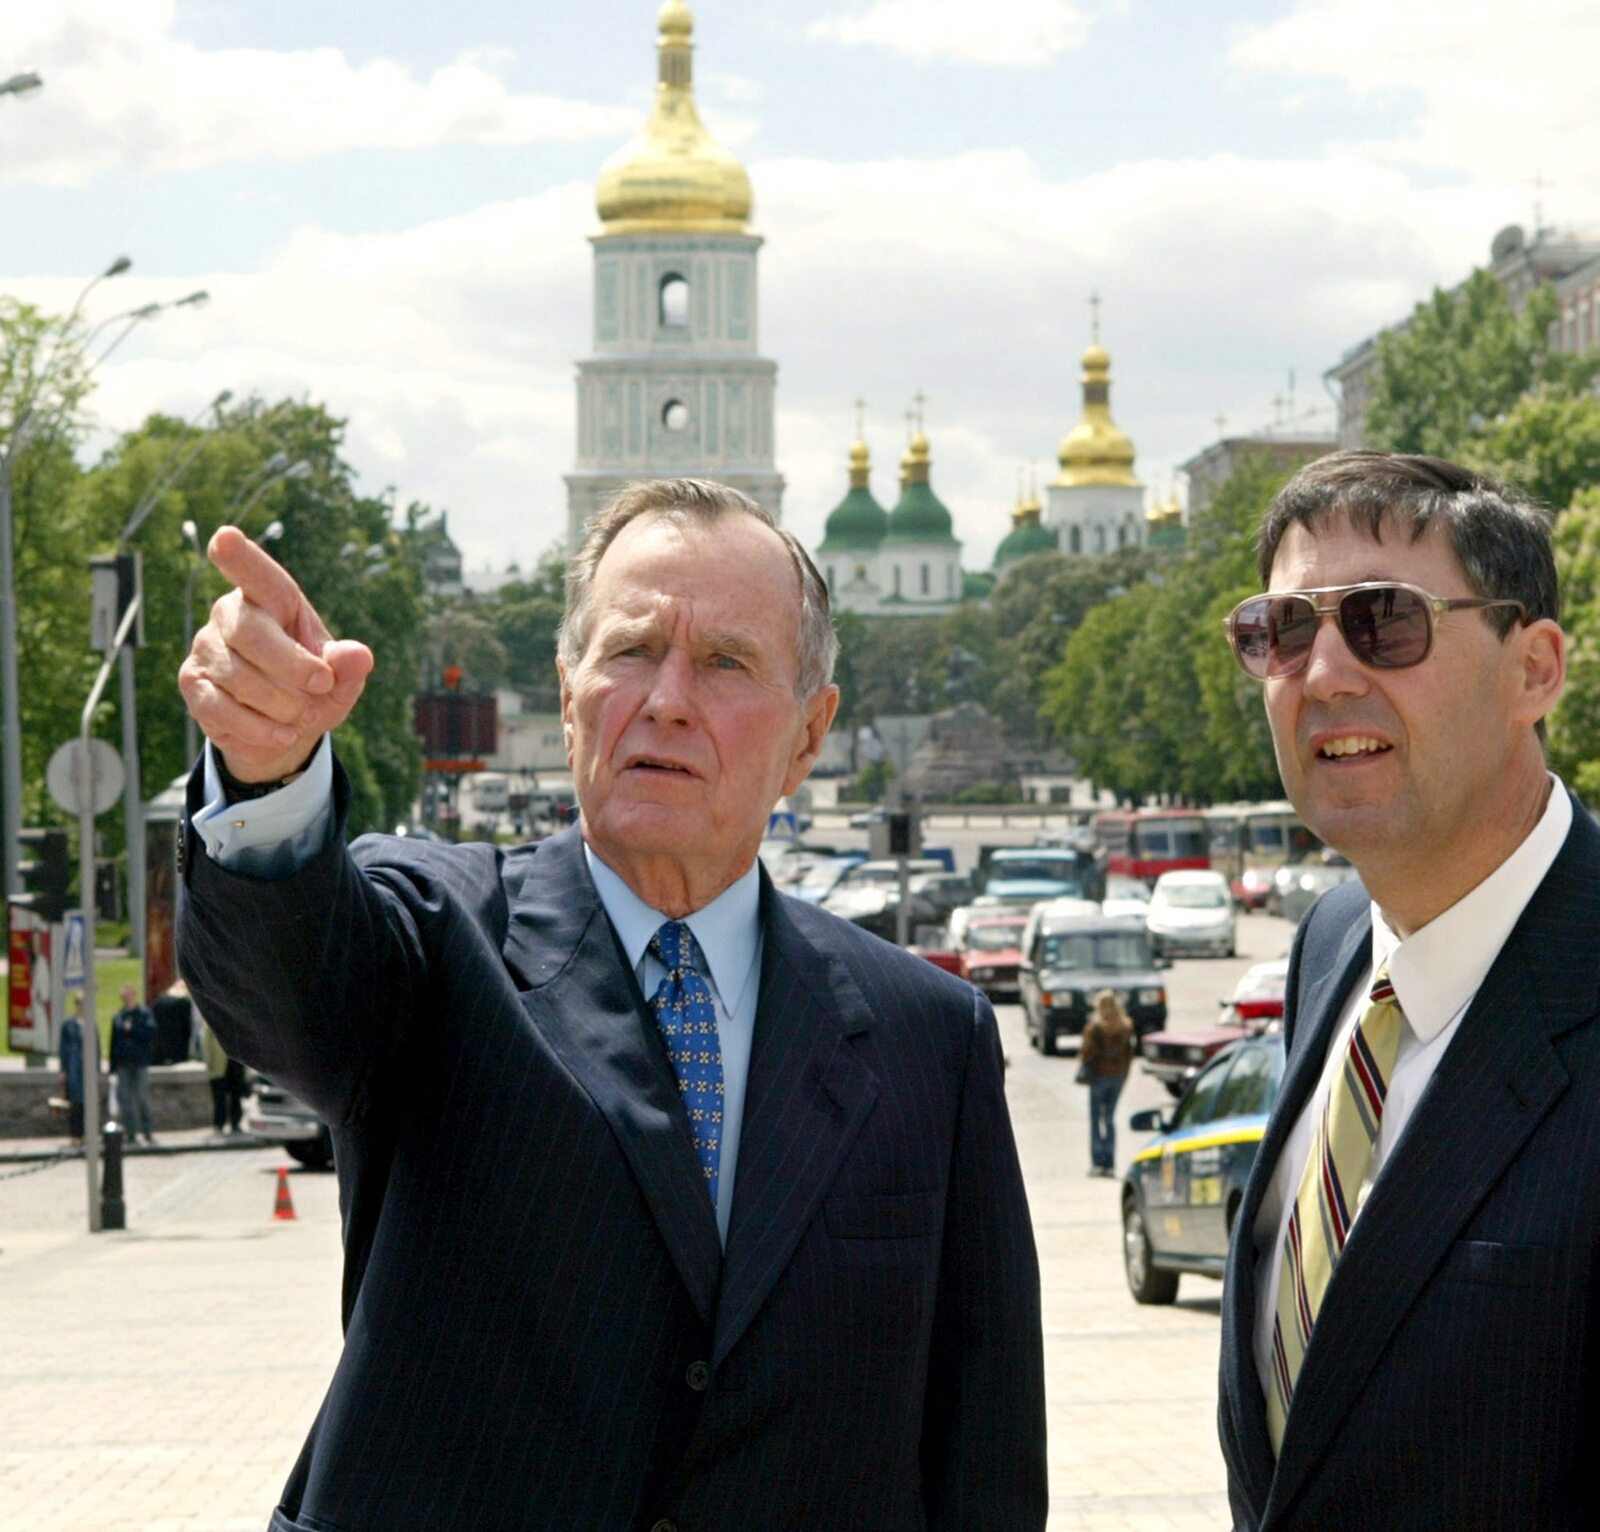 Колишній президент США Джордж Буш розмовляє з Джоном Гербстом, тодішнім послом США в Україні, Київ, 21 травня 2004 року (Фото: EPA/POOL)